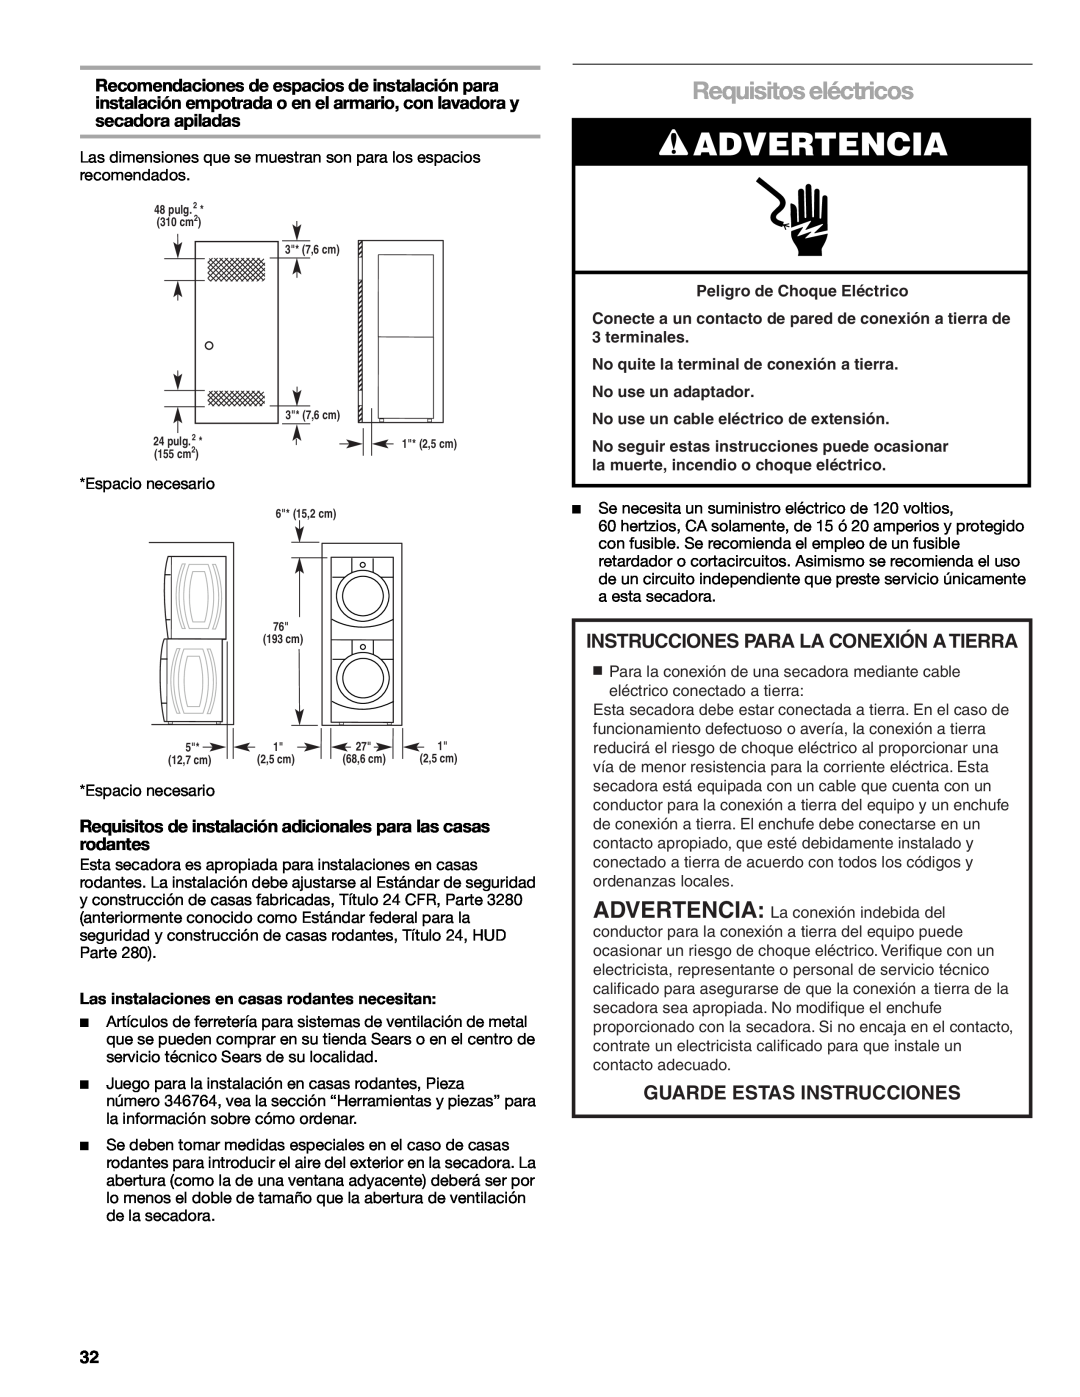 Sears 9709 manual Requisitos eléctricos, Advertencia, Instrucciones Para La Conexión A Tierra, Guarde Estas Instrucciones 